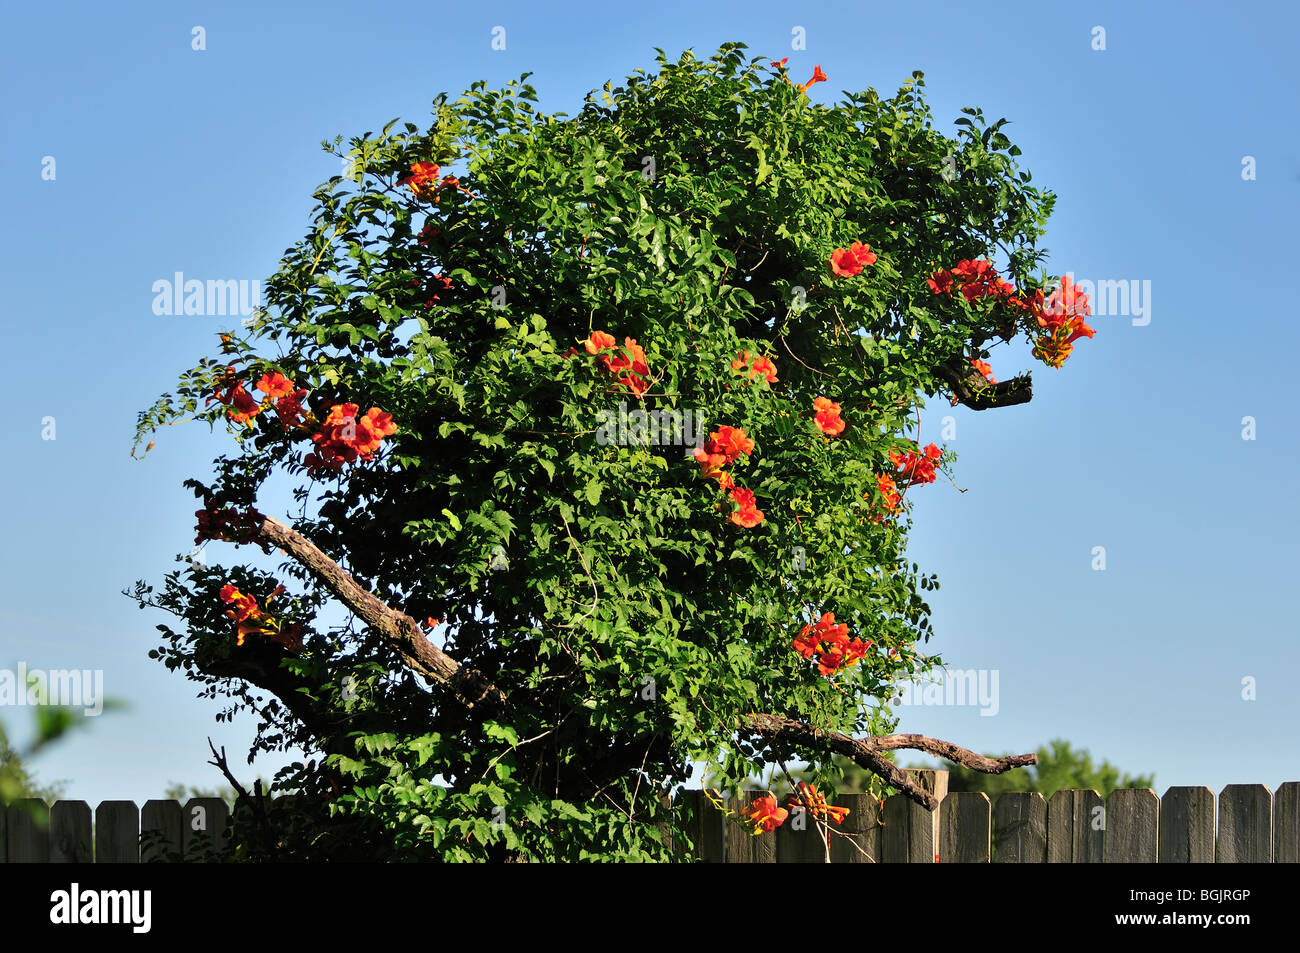 Un blooming trompeta Vid, Campsis radicans, crece en un árbol de durazno muerta. Se muestra contra un cielo azul. Oklahoma, EE.UU. Foto de stock